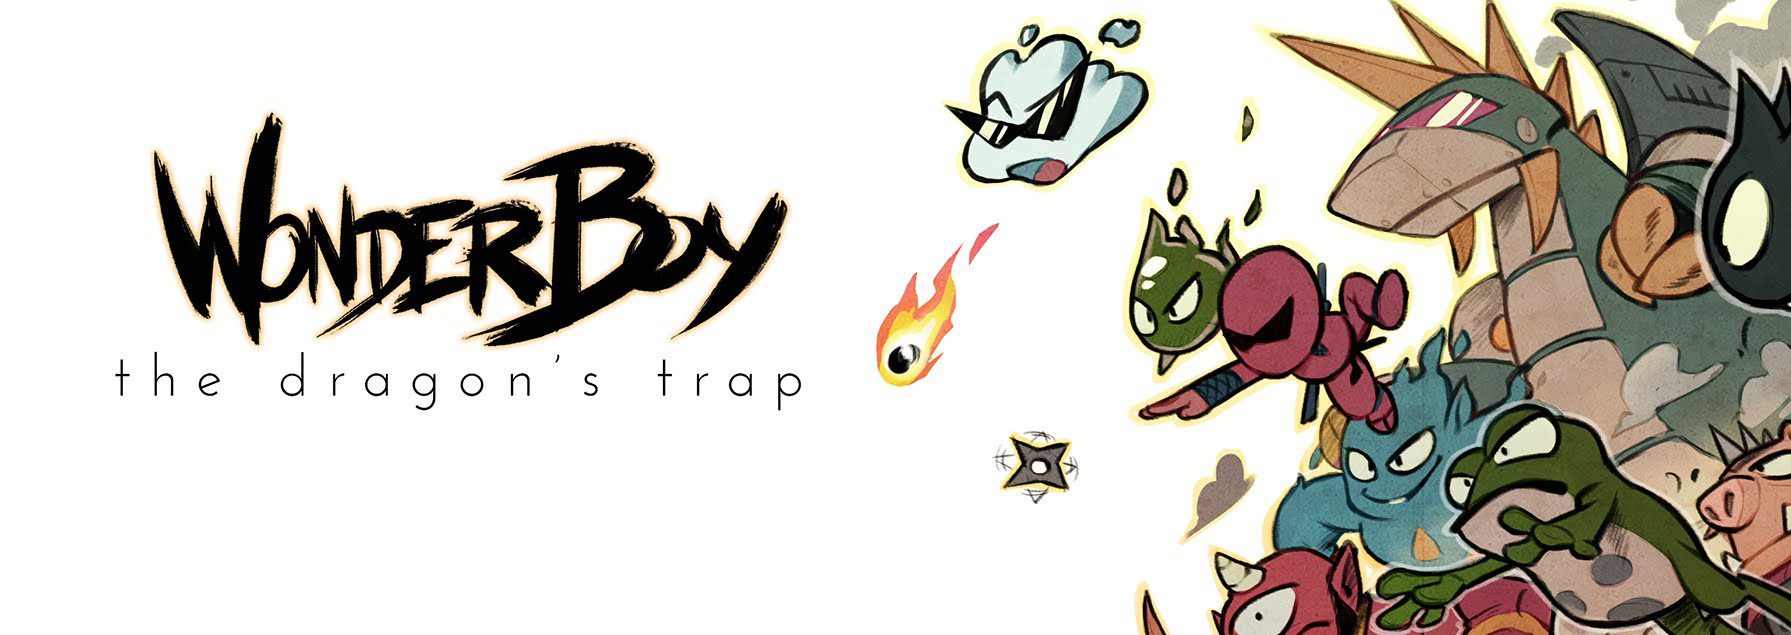 Wonder Boy: The Dragon’s Trap – Review